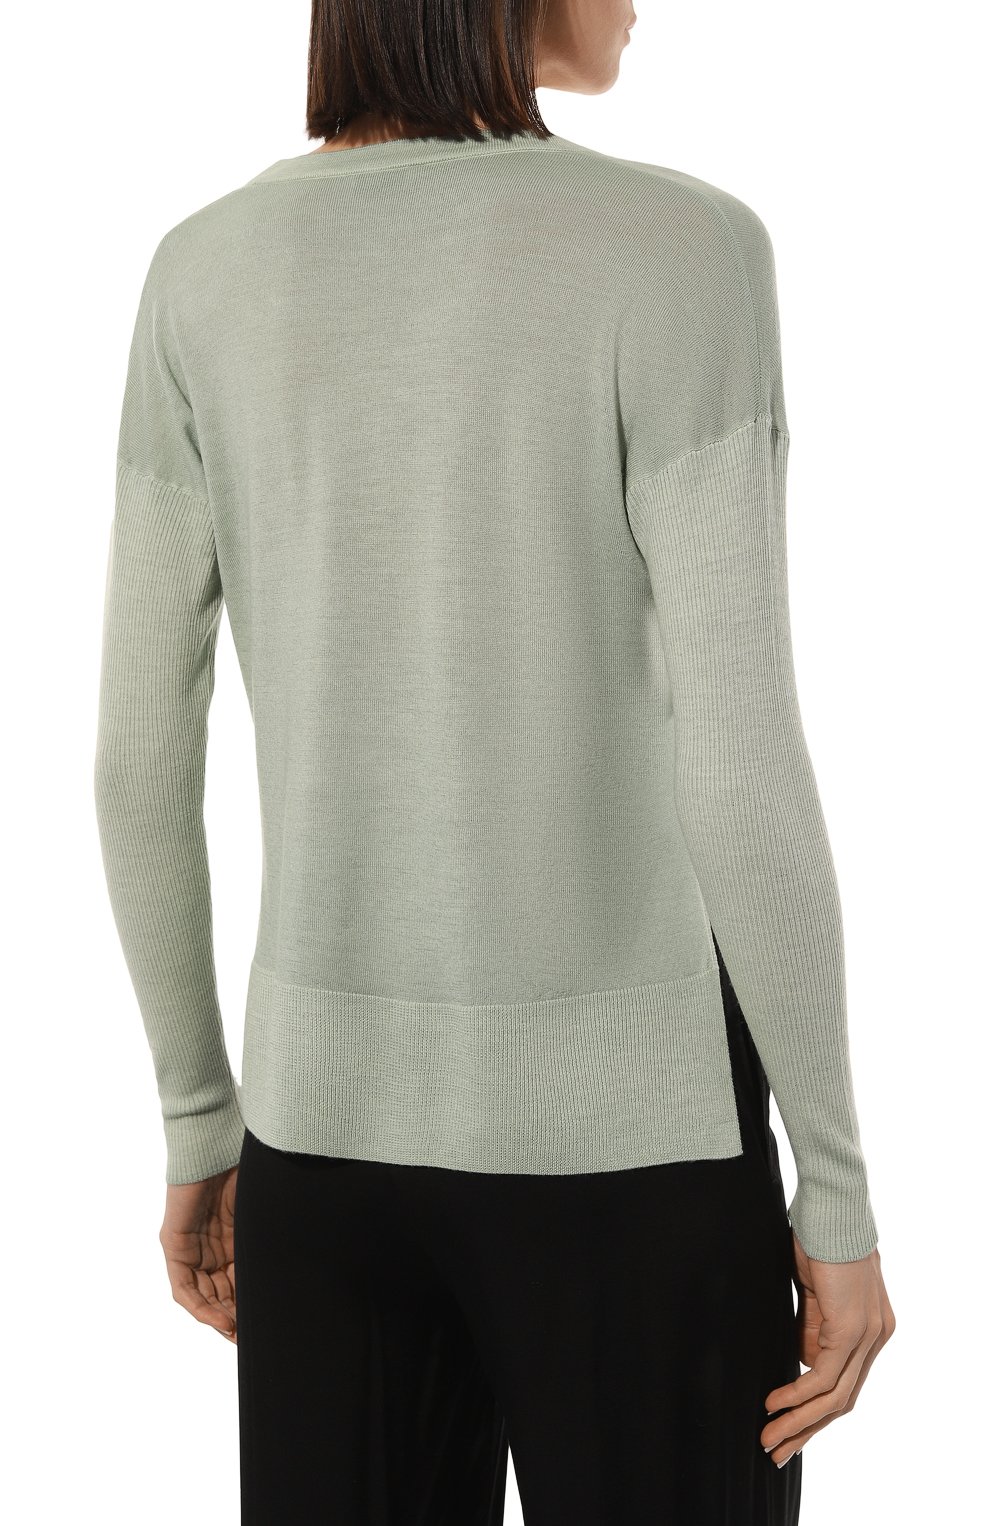 Шерстяной пуловер Gran Sasso 57246/28446, цвет зелёный, размер 44 57246/28446 - фото 4